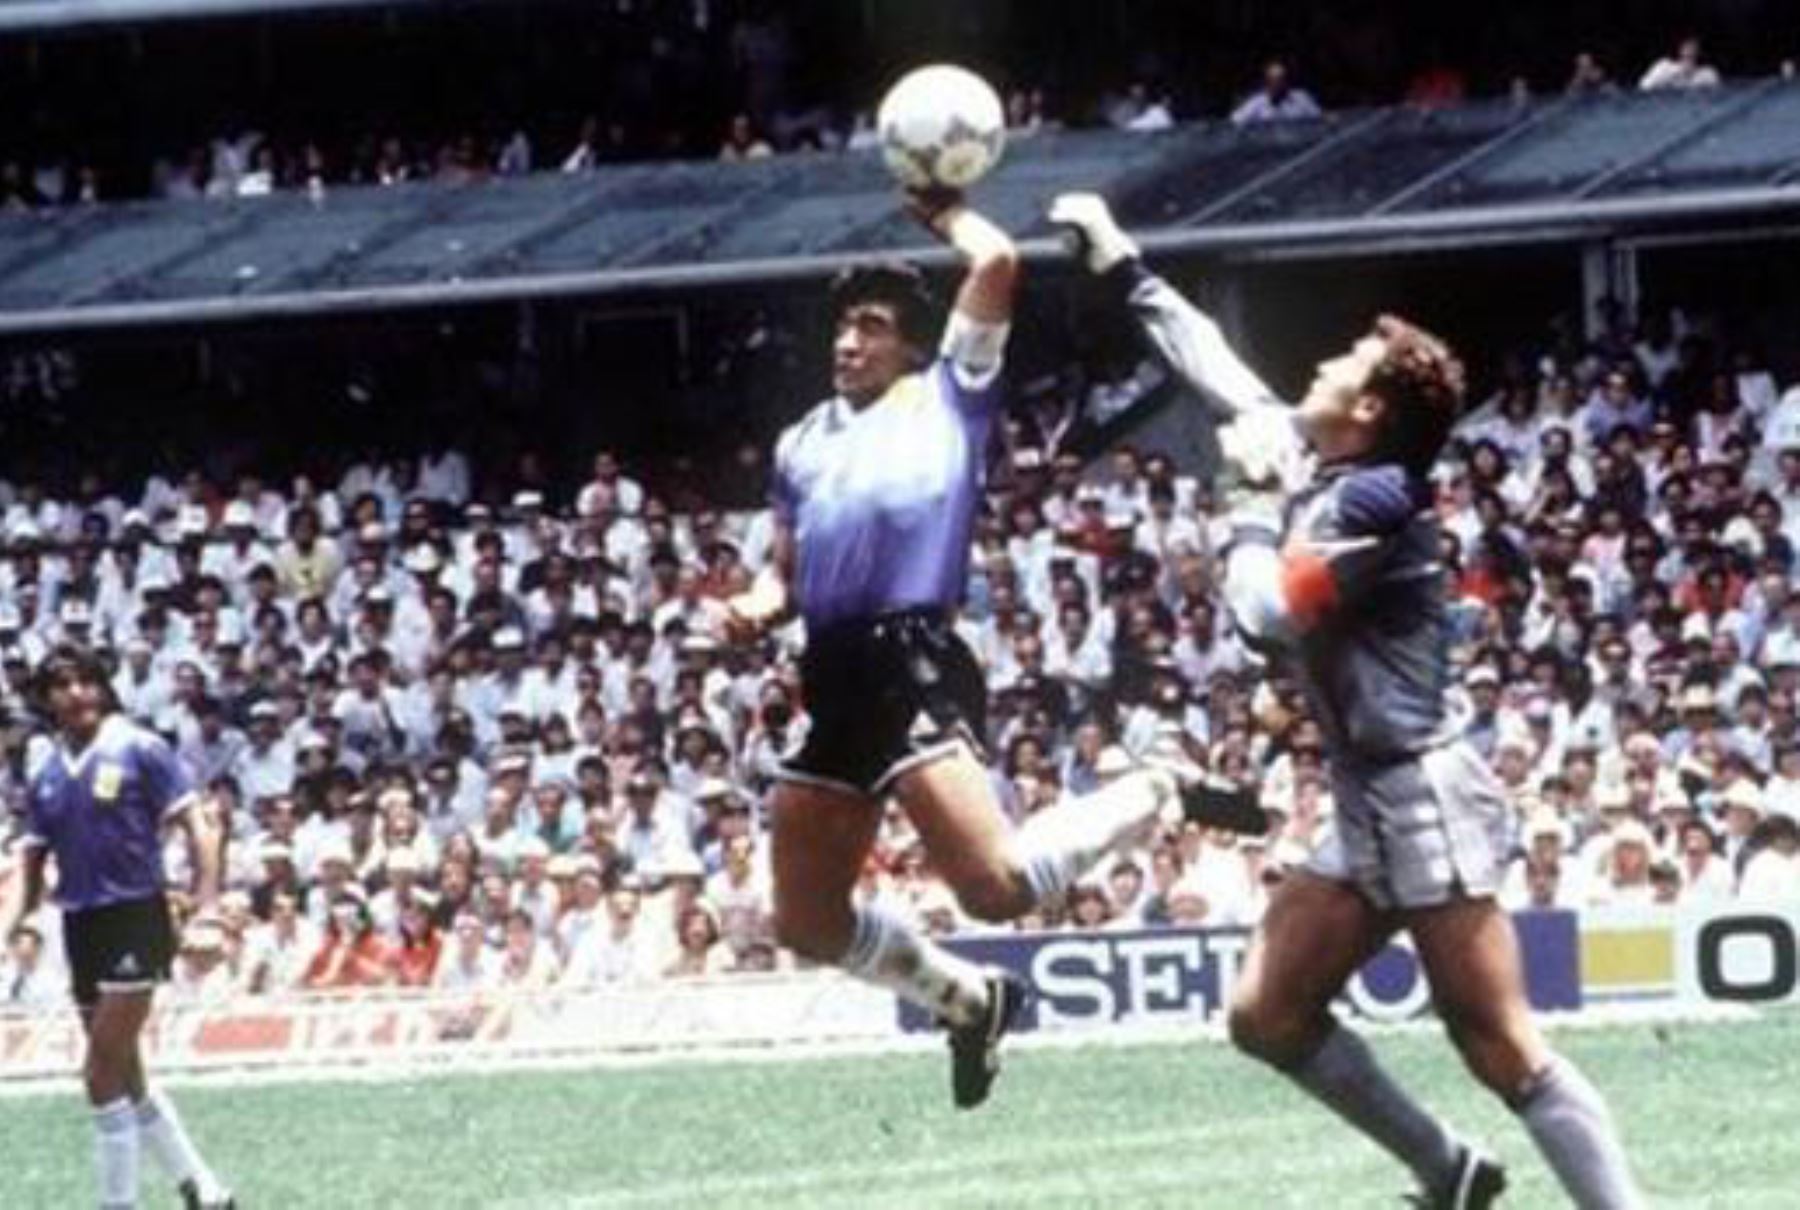 Asociación de Fútbol Argentina frustrada por perder mítica camiseta de Maradona